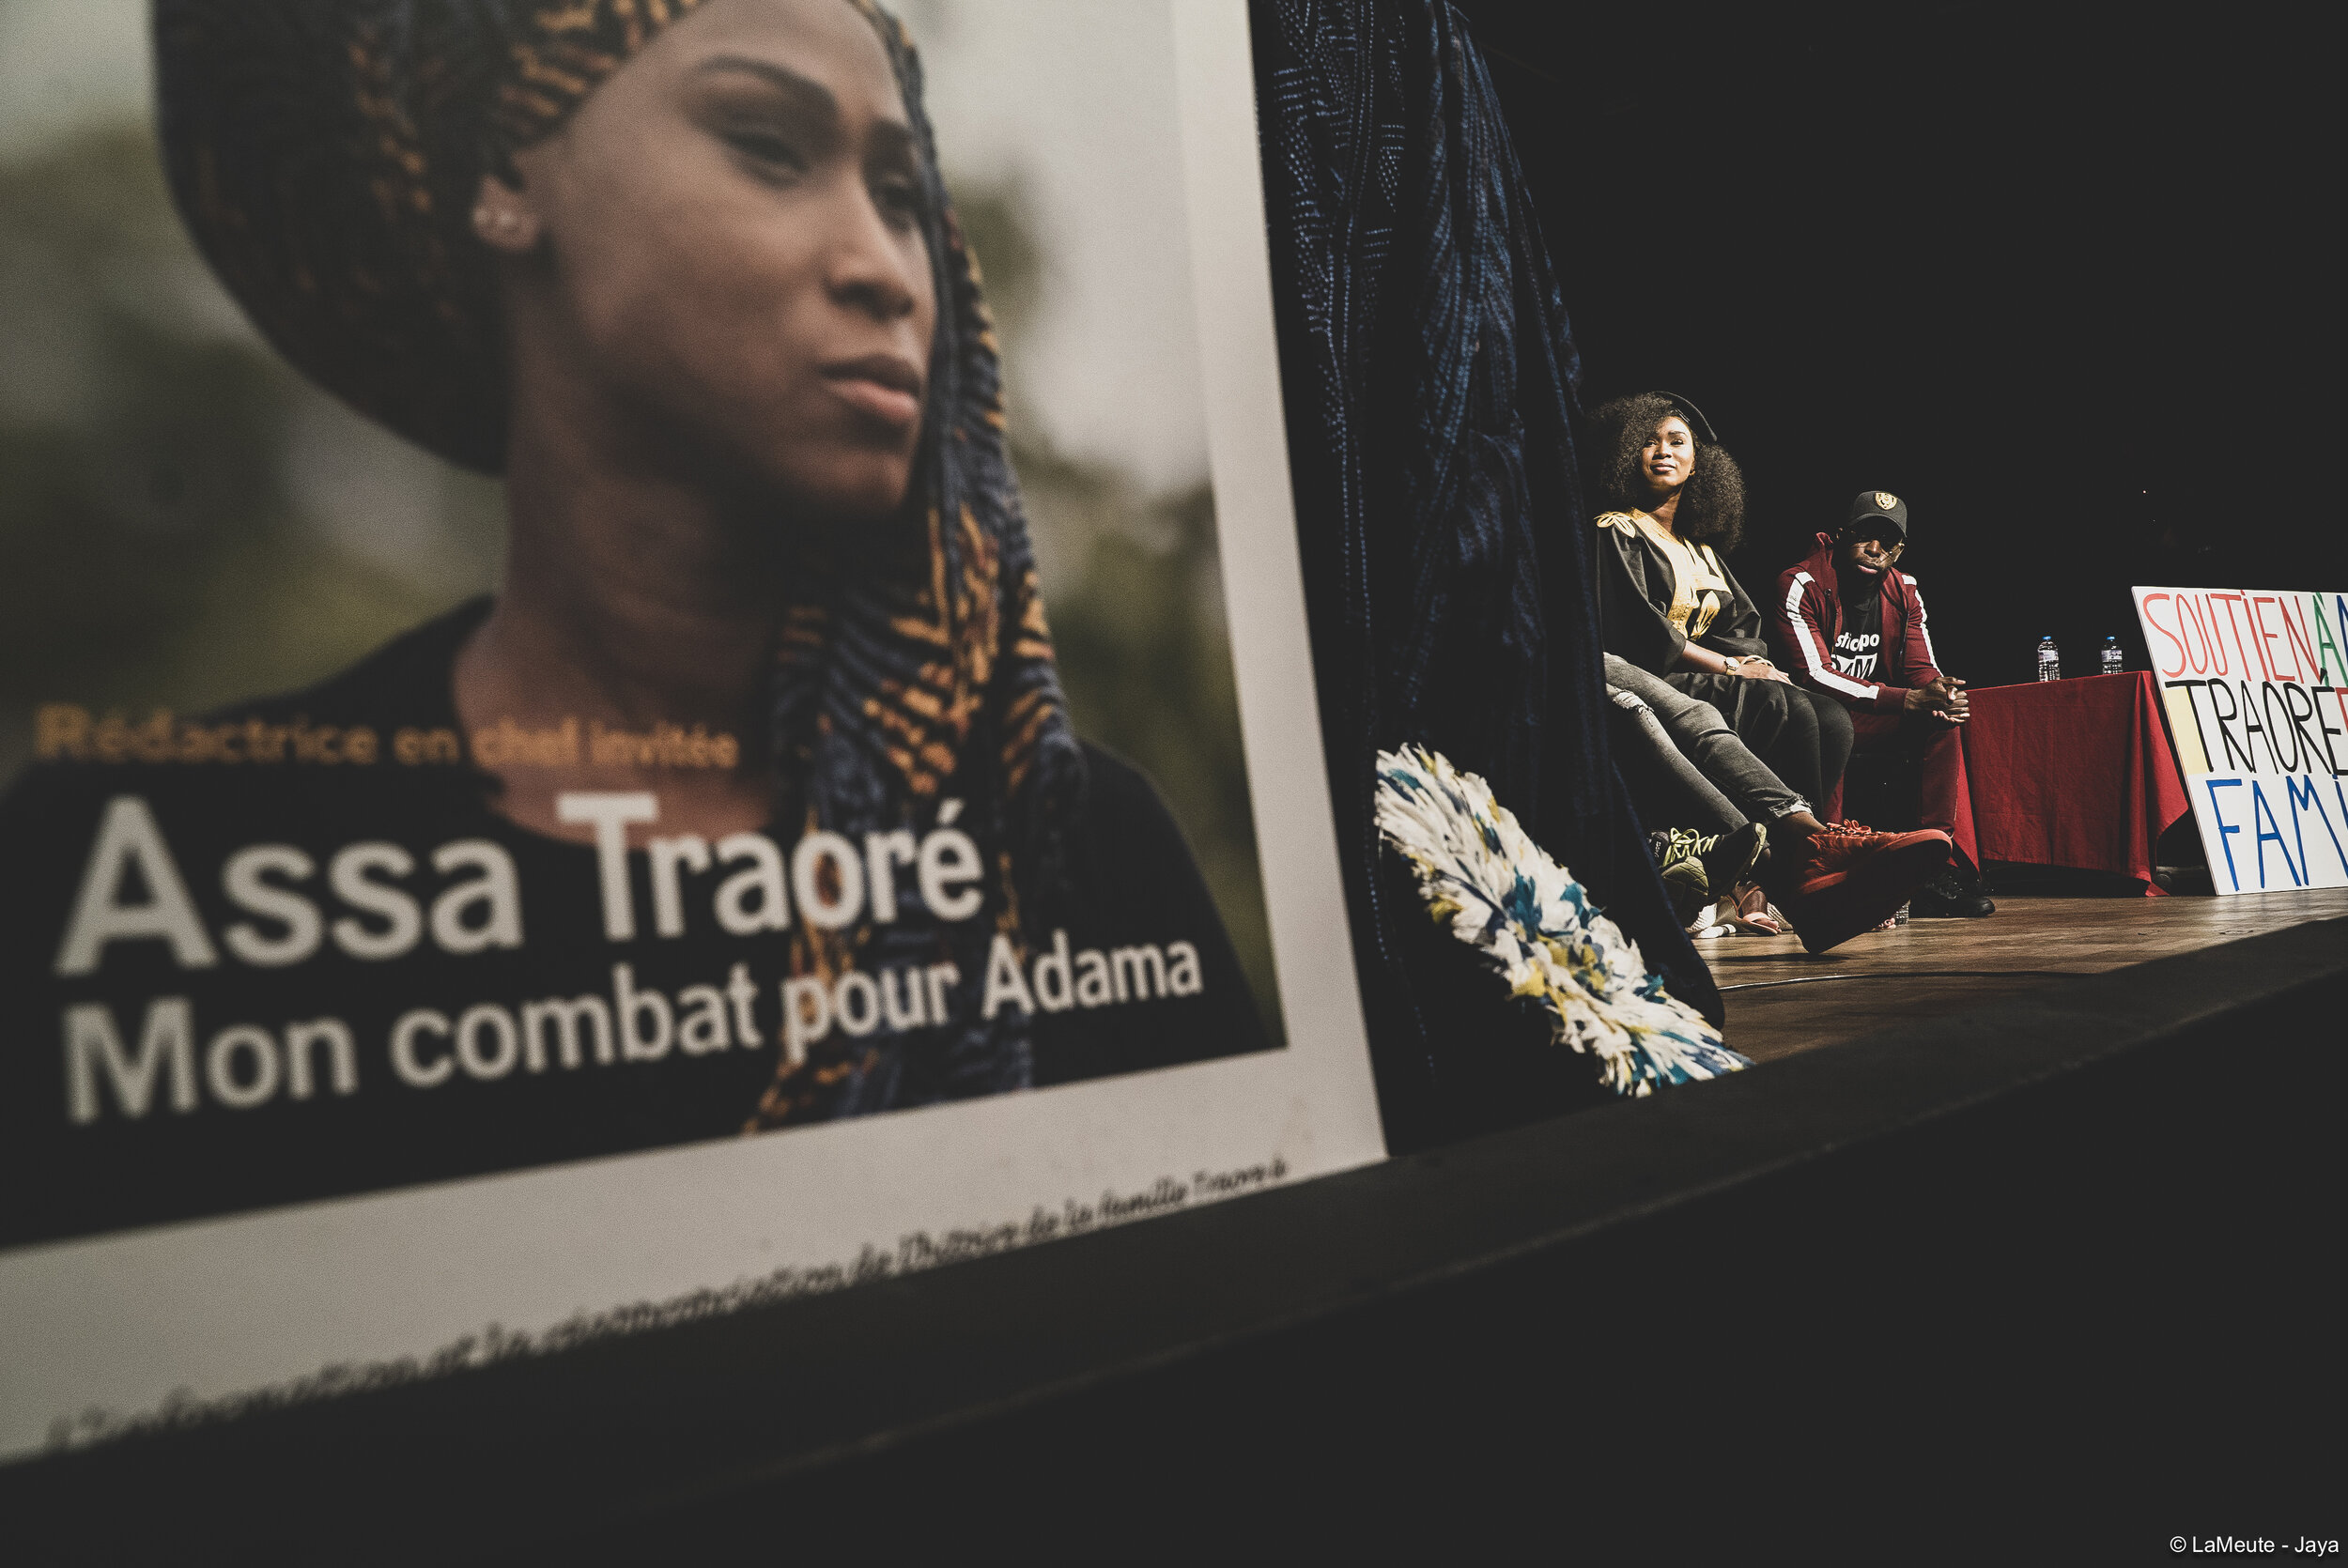   Assa Traoré et le comité pour Adama ont réussi à s’imposer face aux grands médias. Tant et si bien qu’Assa a été nommée de nombreuses fois rédactrice en cheffe invitée par plusieurs d’entre eux; ici, Politis.  ©LaMeute - Jaya 